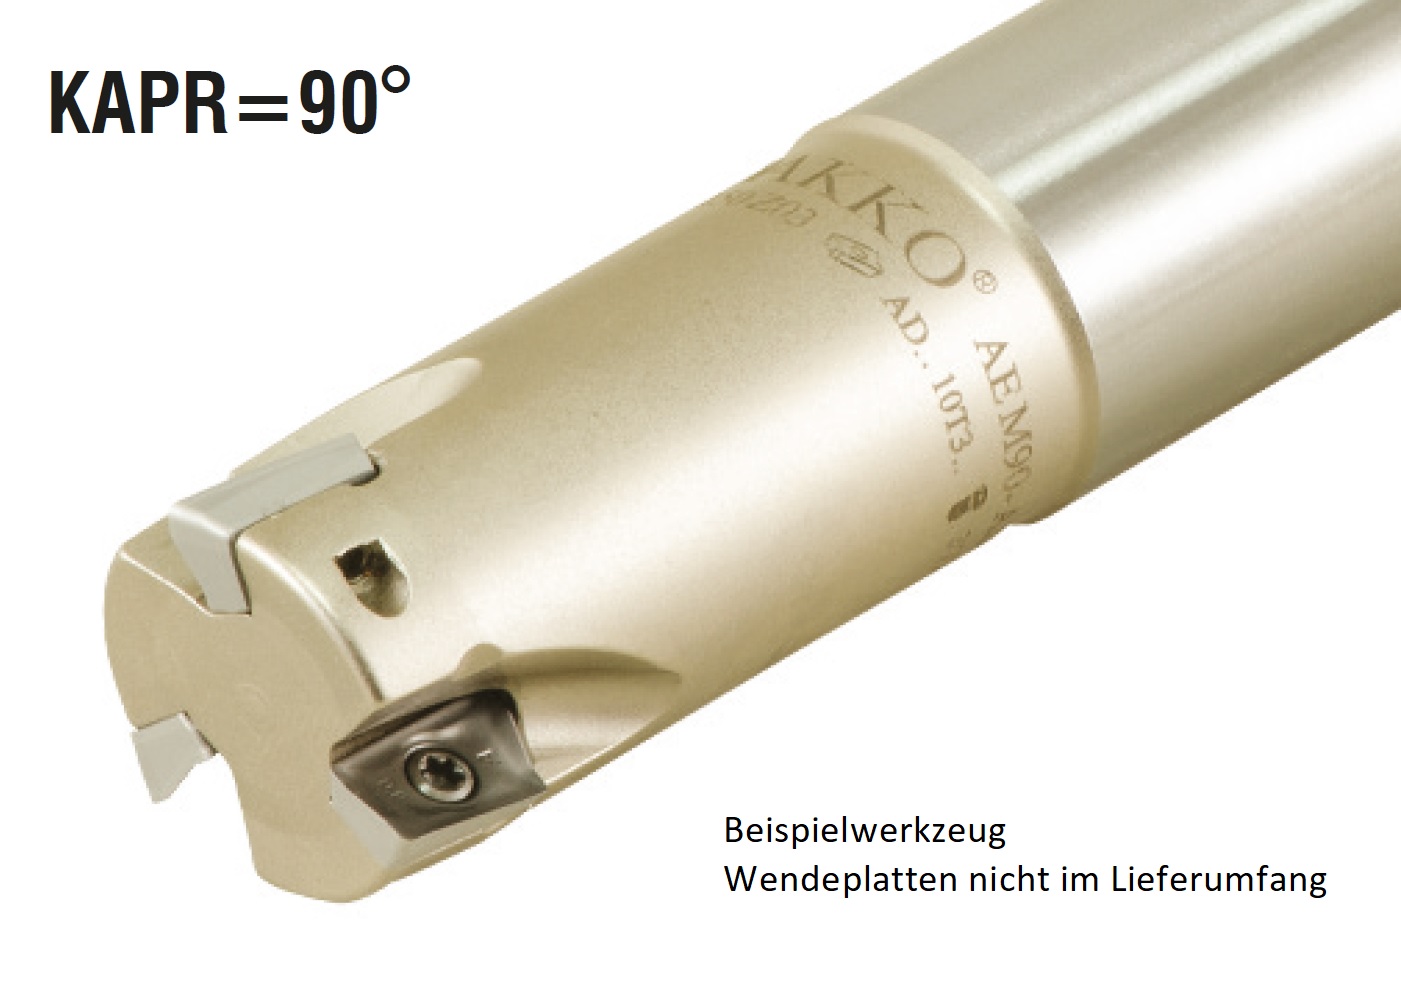 AKKO-Wendeplatten-Schaftfräser ø 25 mm, 90°, kompatibel mit Walter ADMT 1606..
Schaft-ø 25, ohne Innenkühlung, Z=2